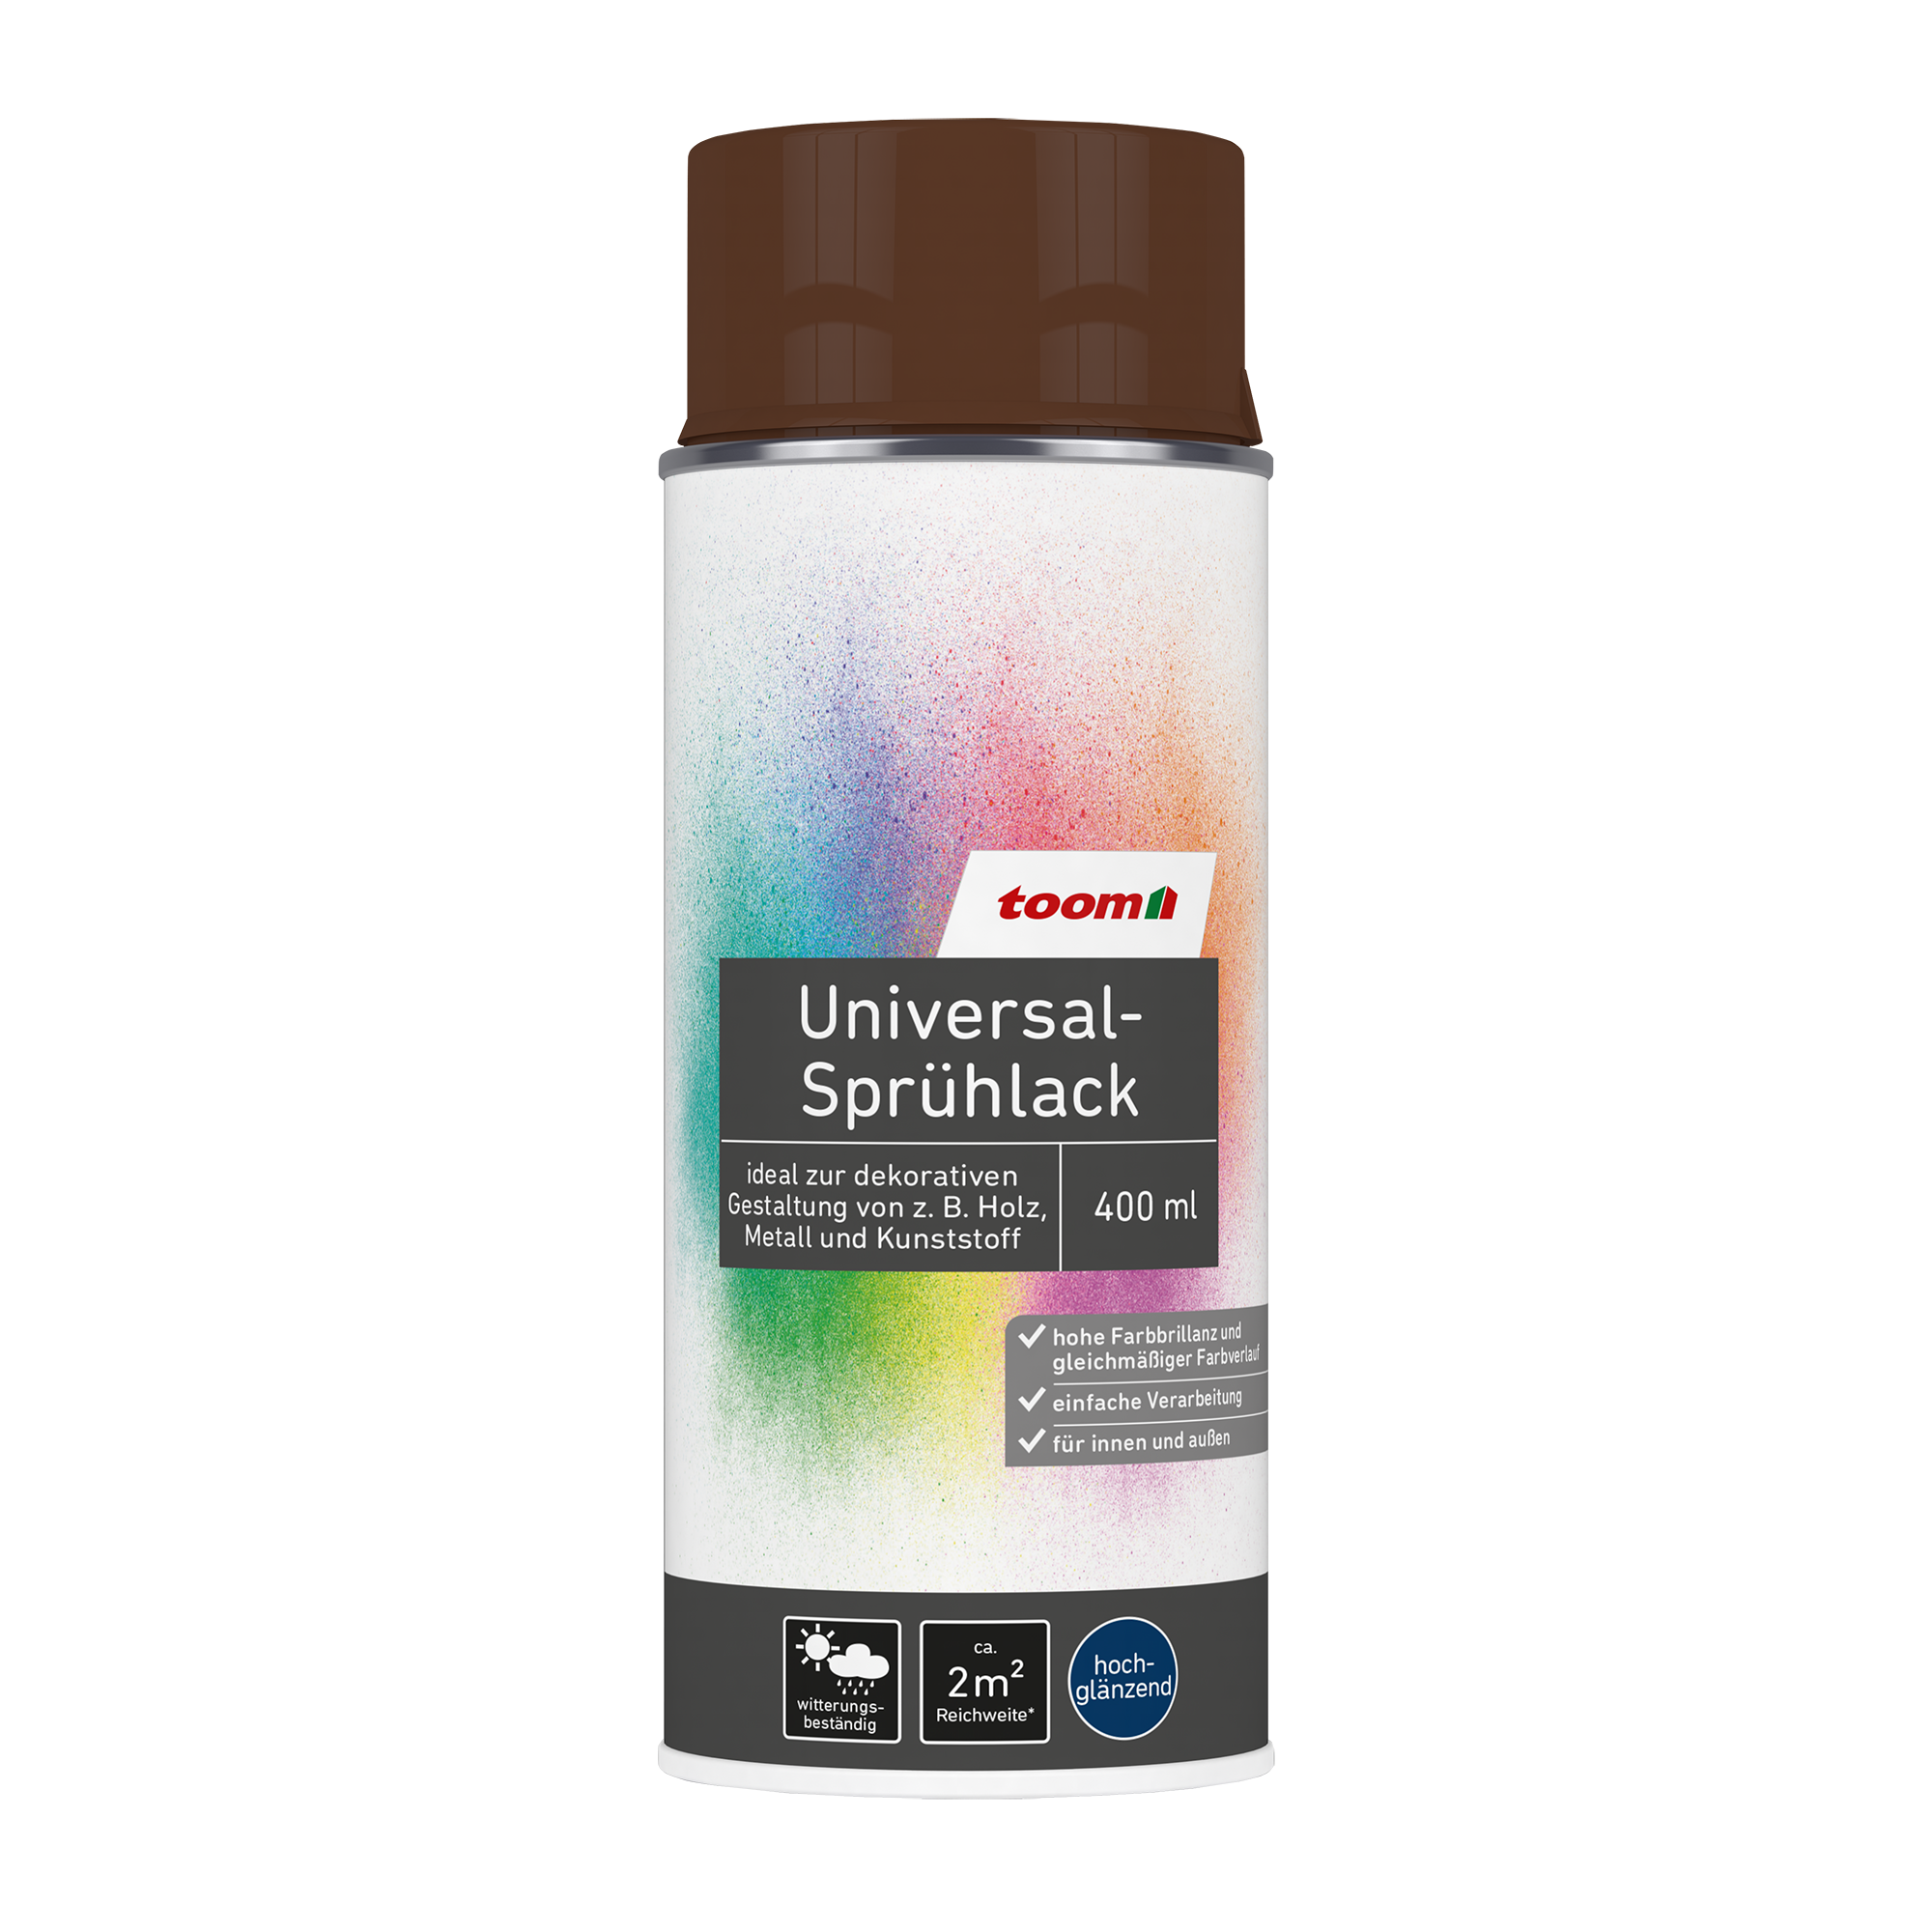 Universal-Sprühlack haselnussfarben glänzend 400 ml + product picture